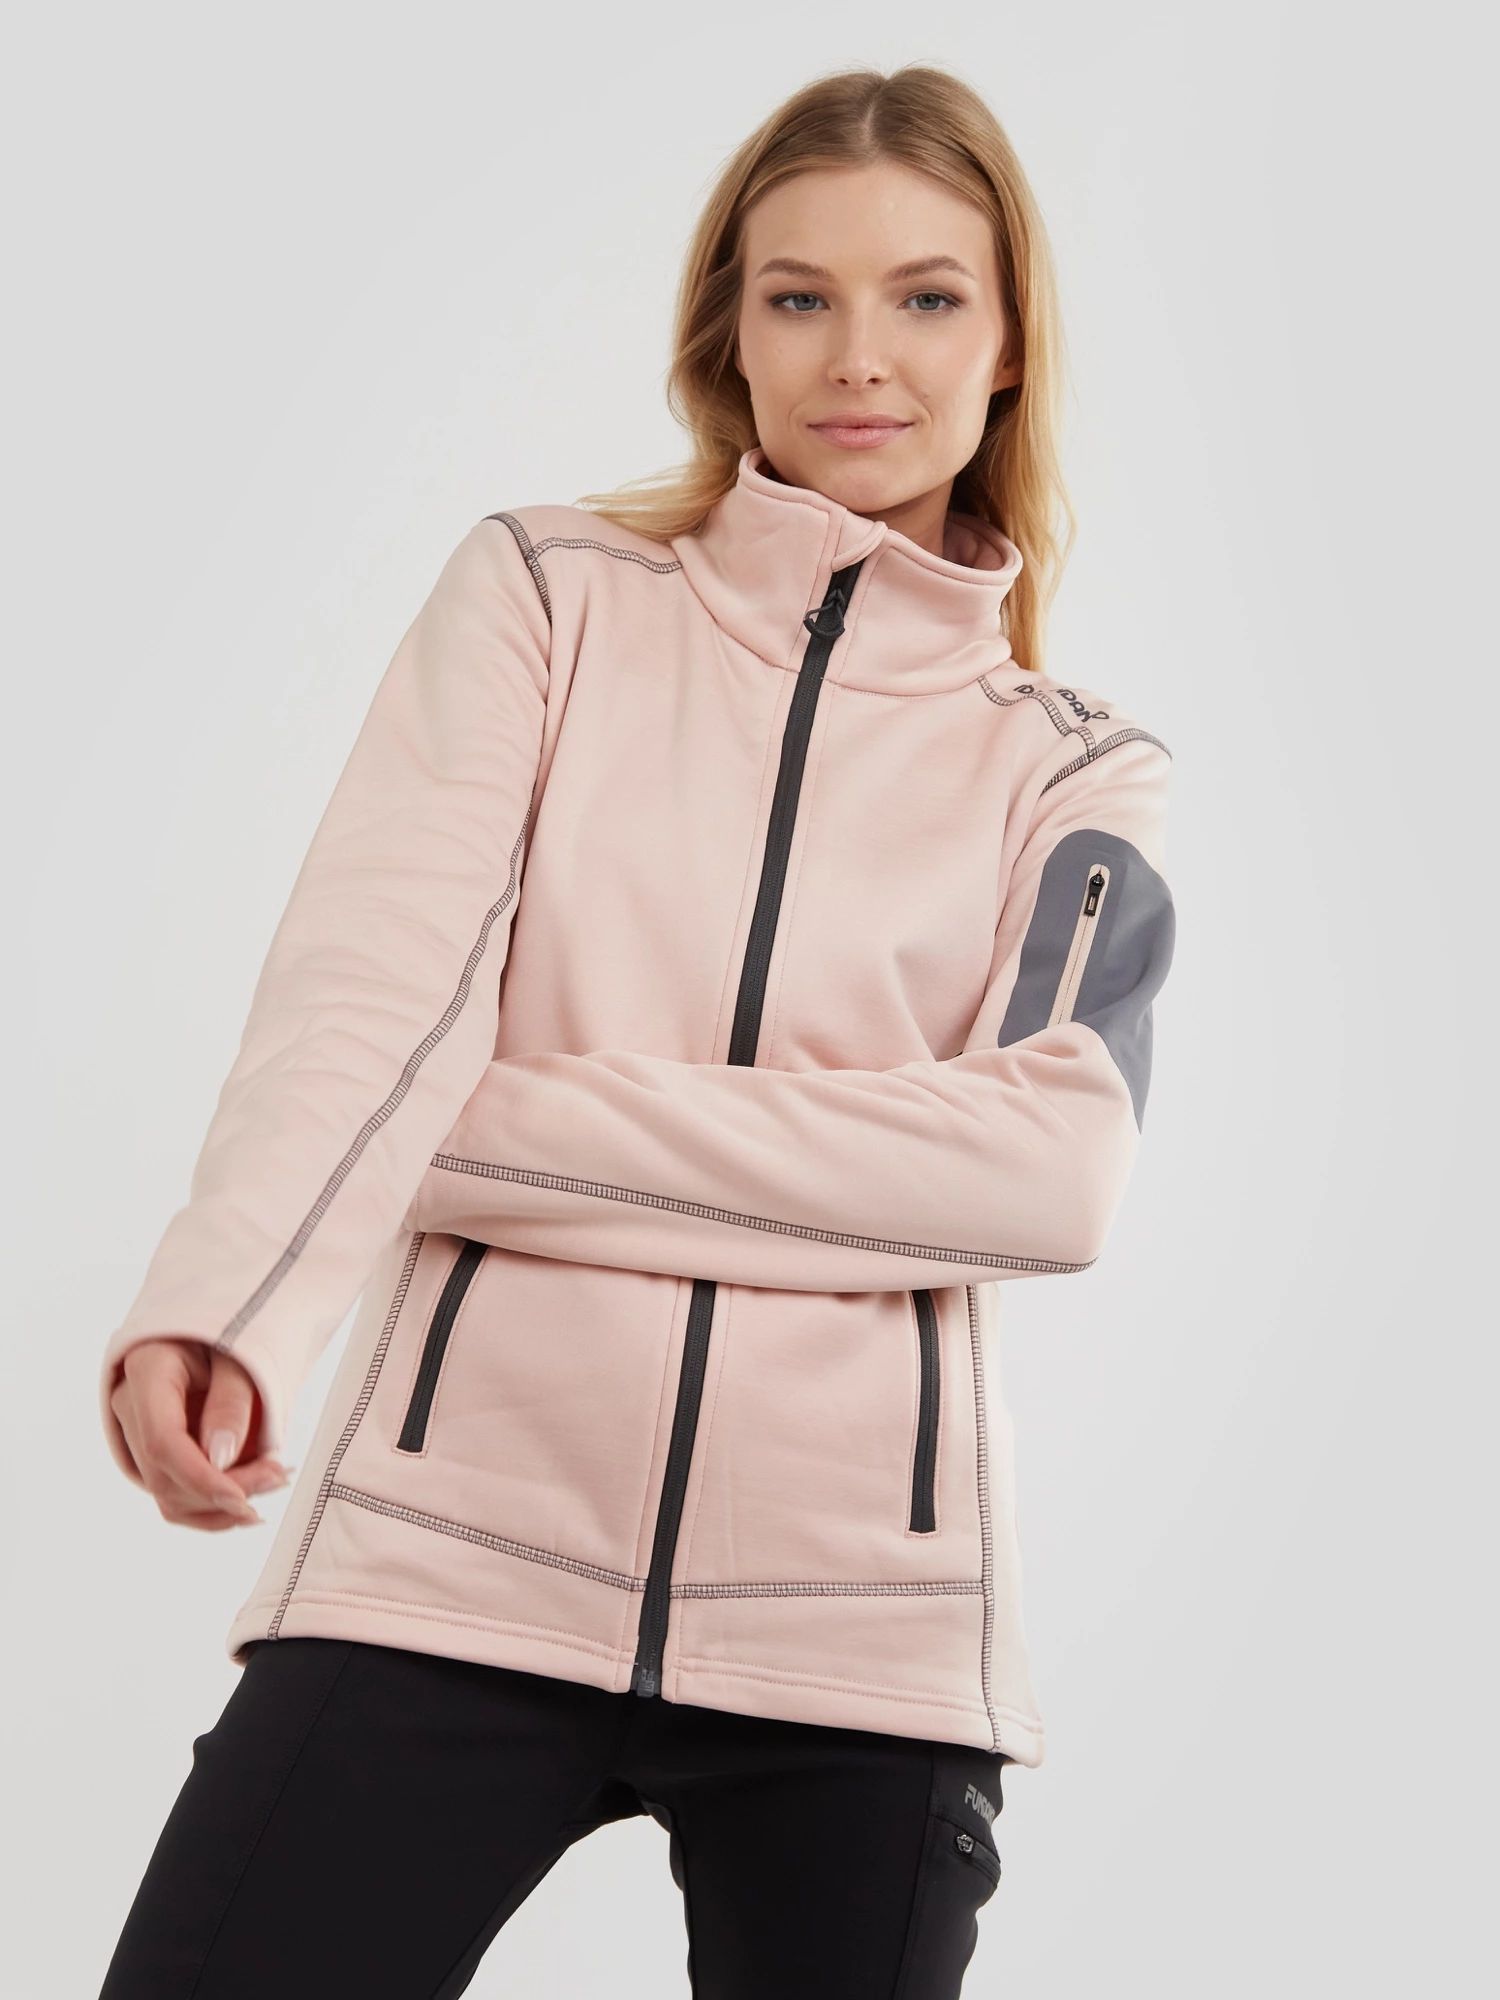 Куртка Fundango для женщин, софтшелл, размер S, 2MAD105, розовая